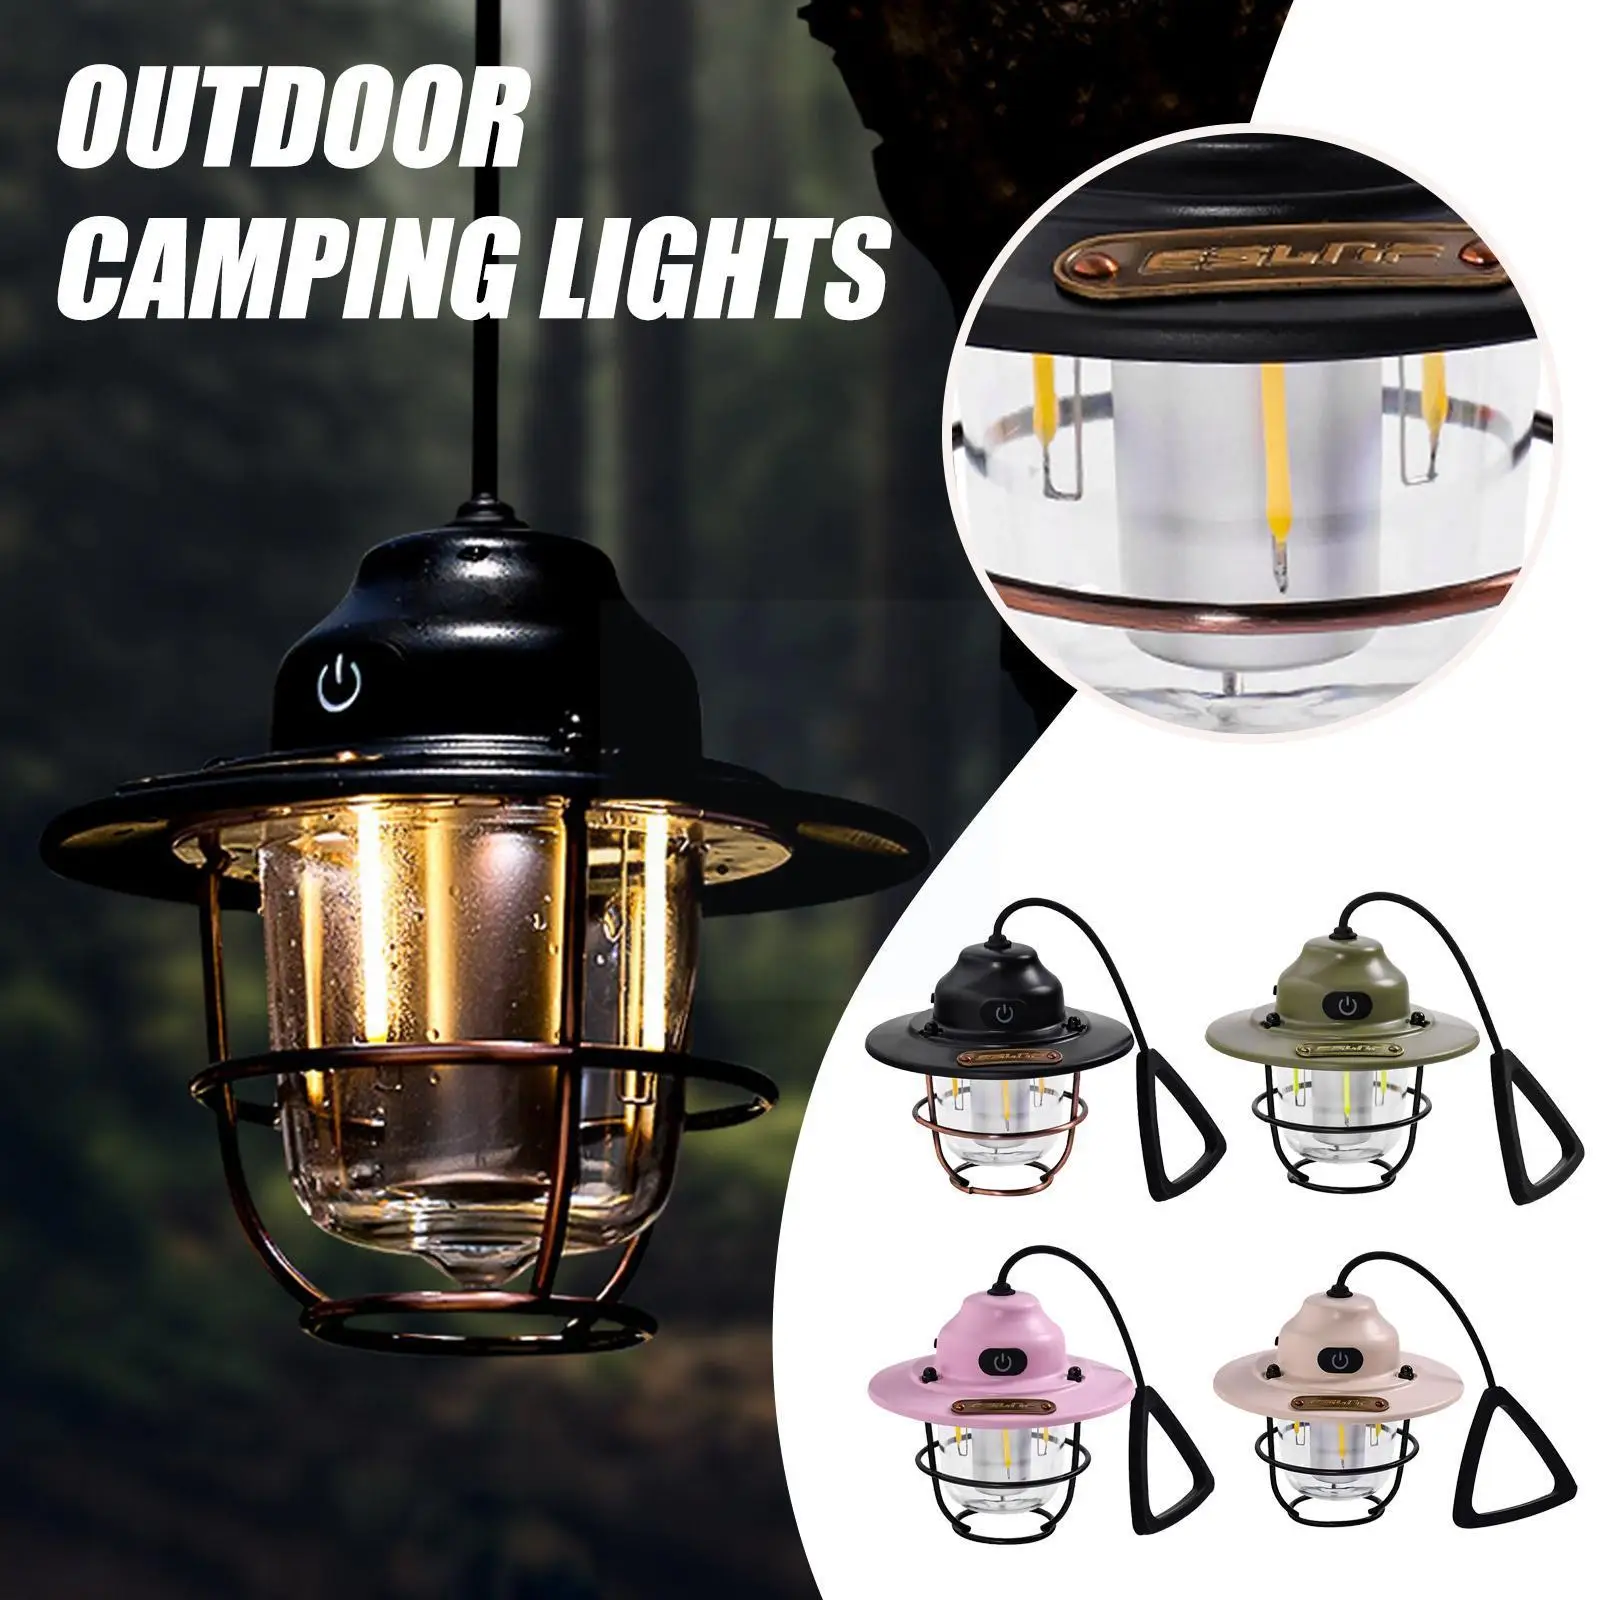 

Retro Outdoor Camping Camp Lights Tent Chandeliers Lights Outdoor Waterproof Camping Tent Lighting Retro Hanging Multi-func C1u0